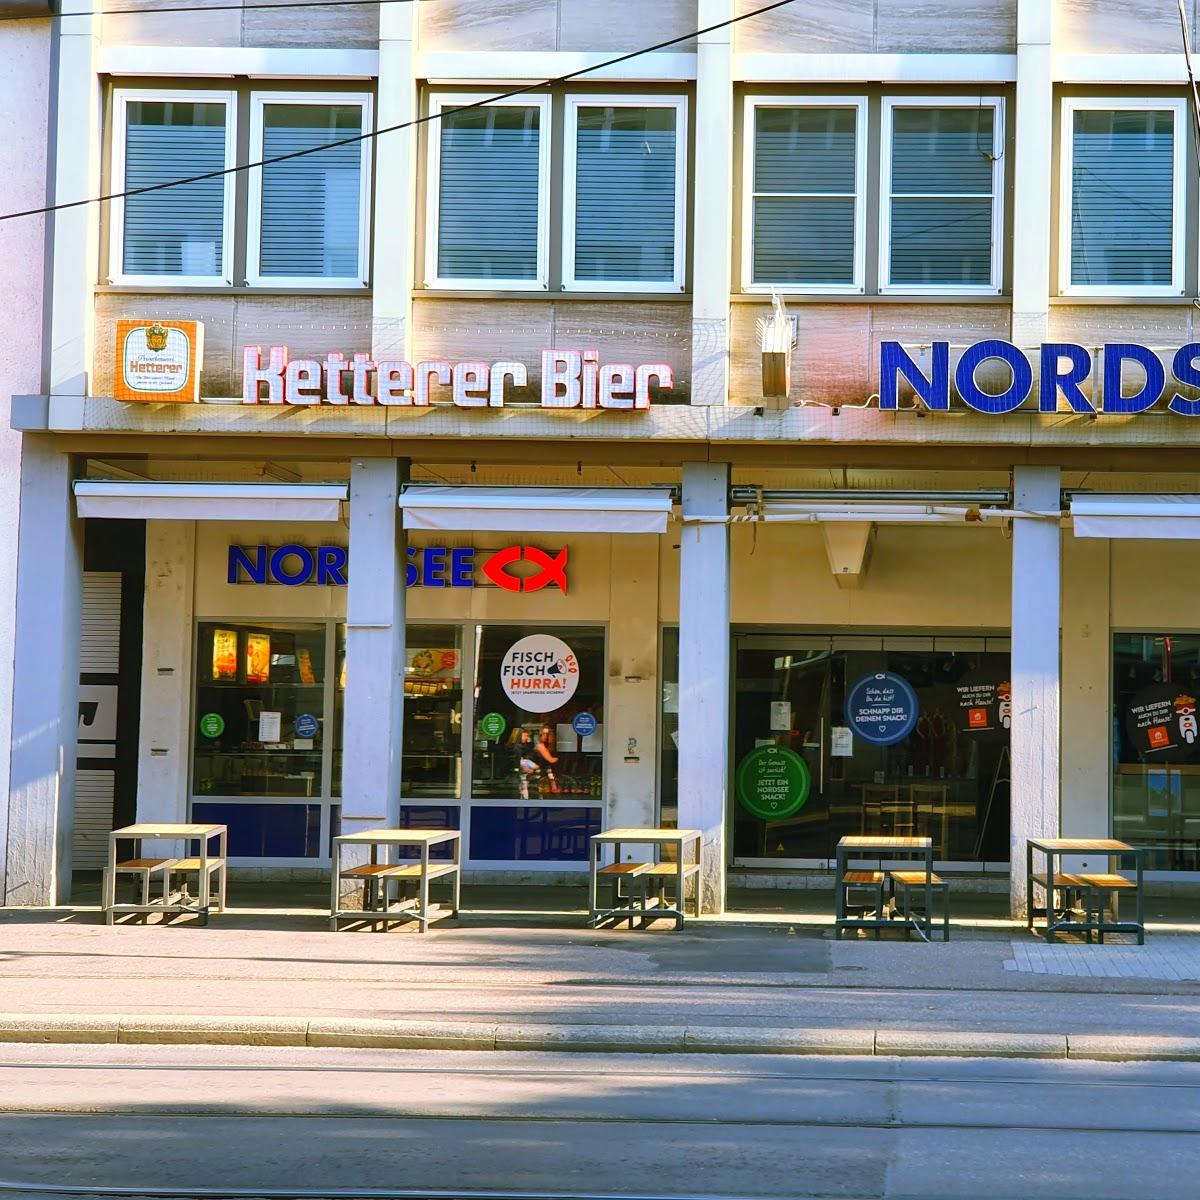 Restaurant "NORDSEE Karlsruhe Kaiserstraße Meeresbuffett" in Karlsruhe